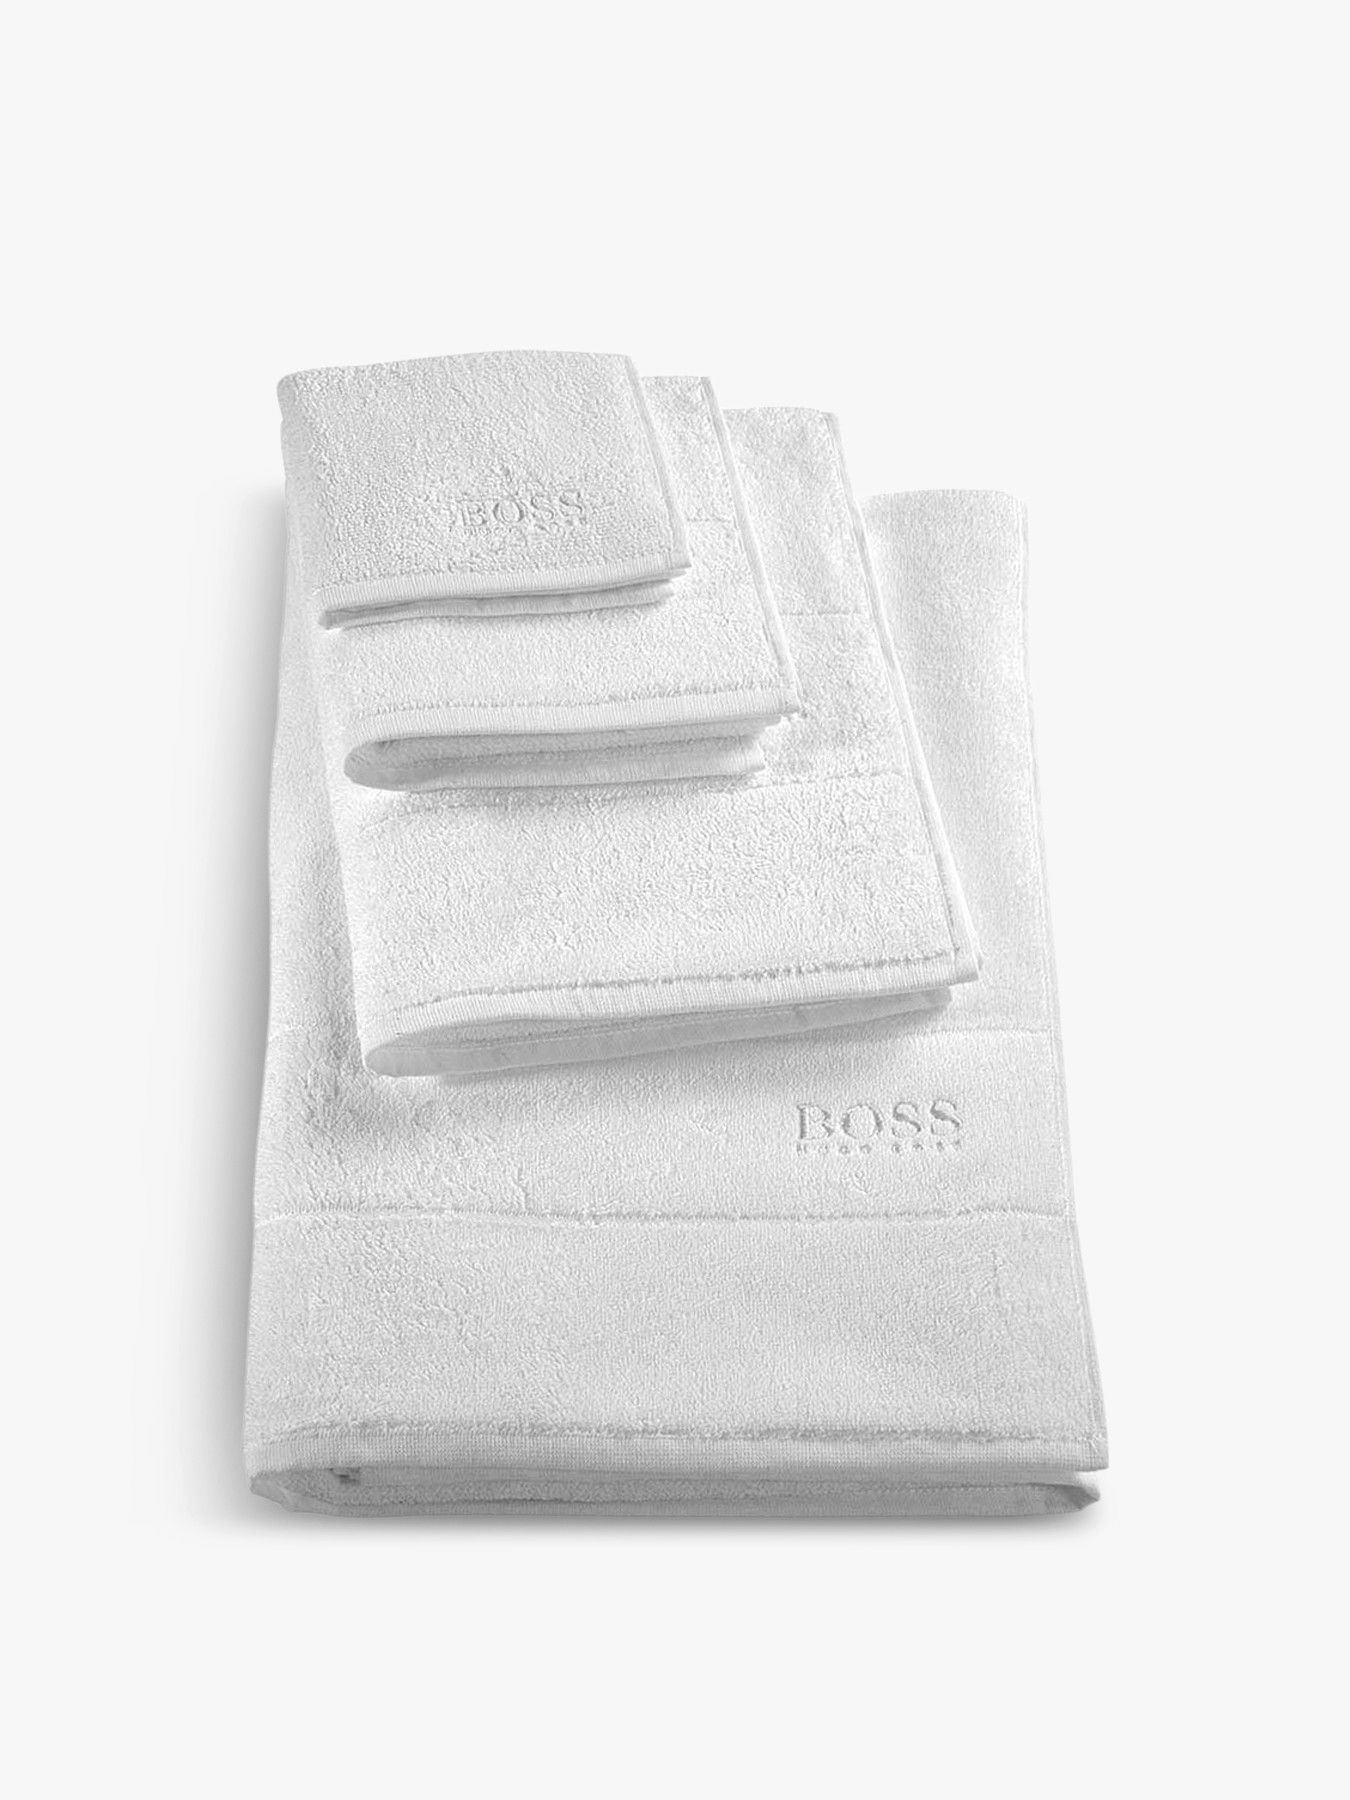 hugo boss bath towels